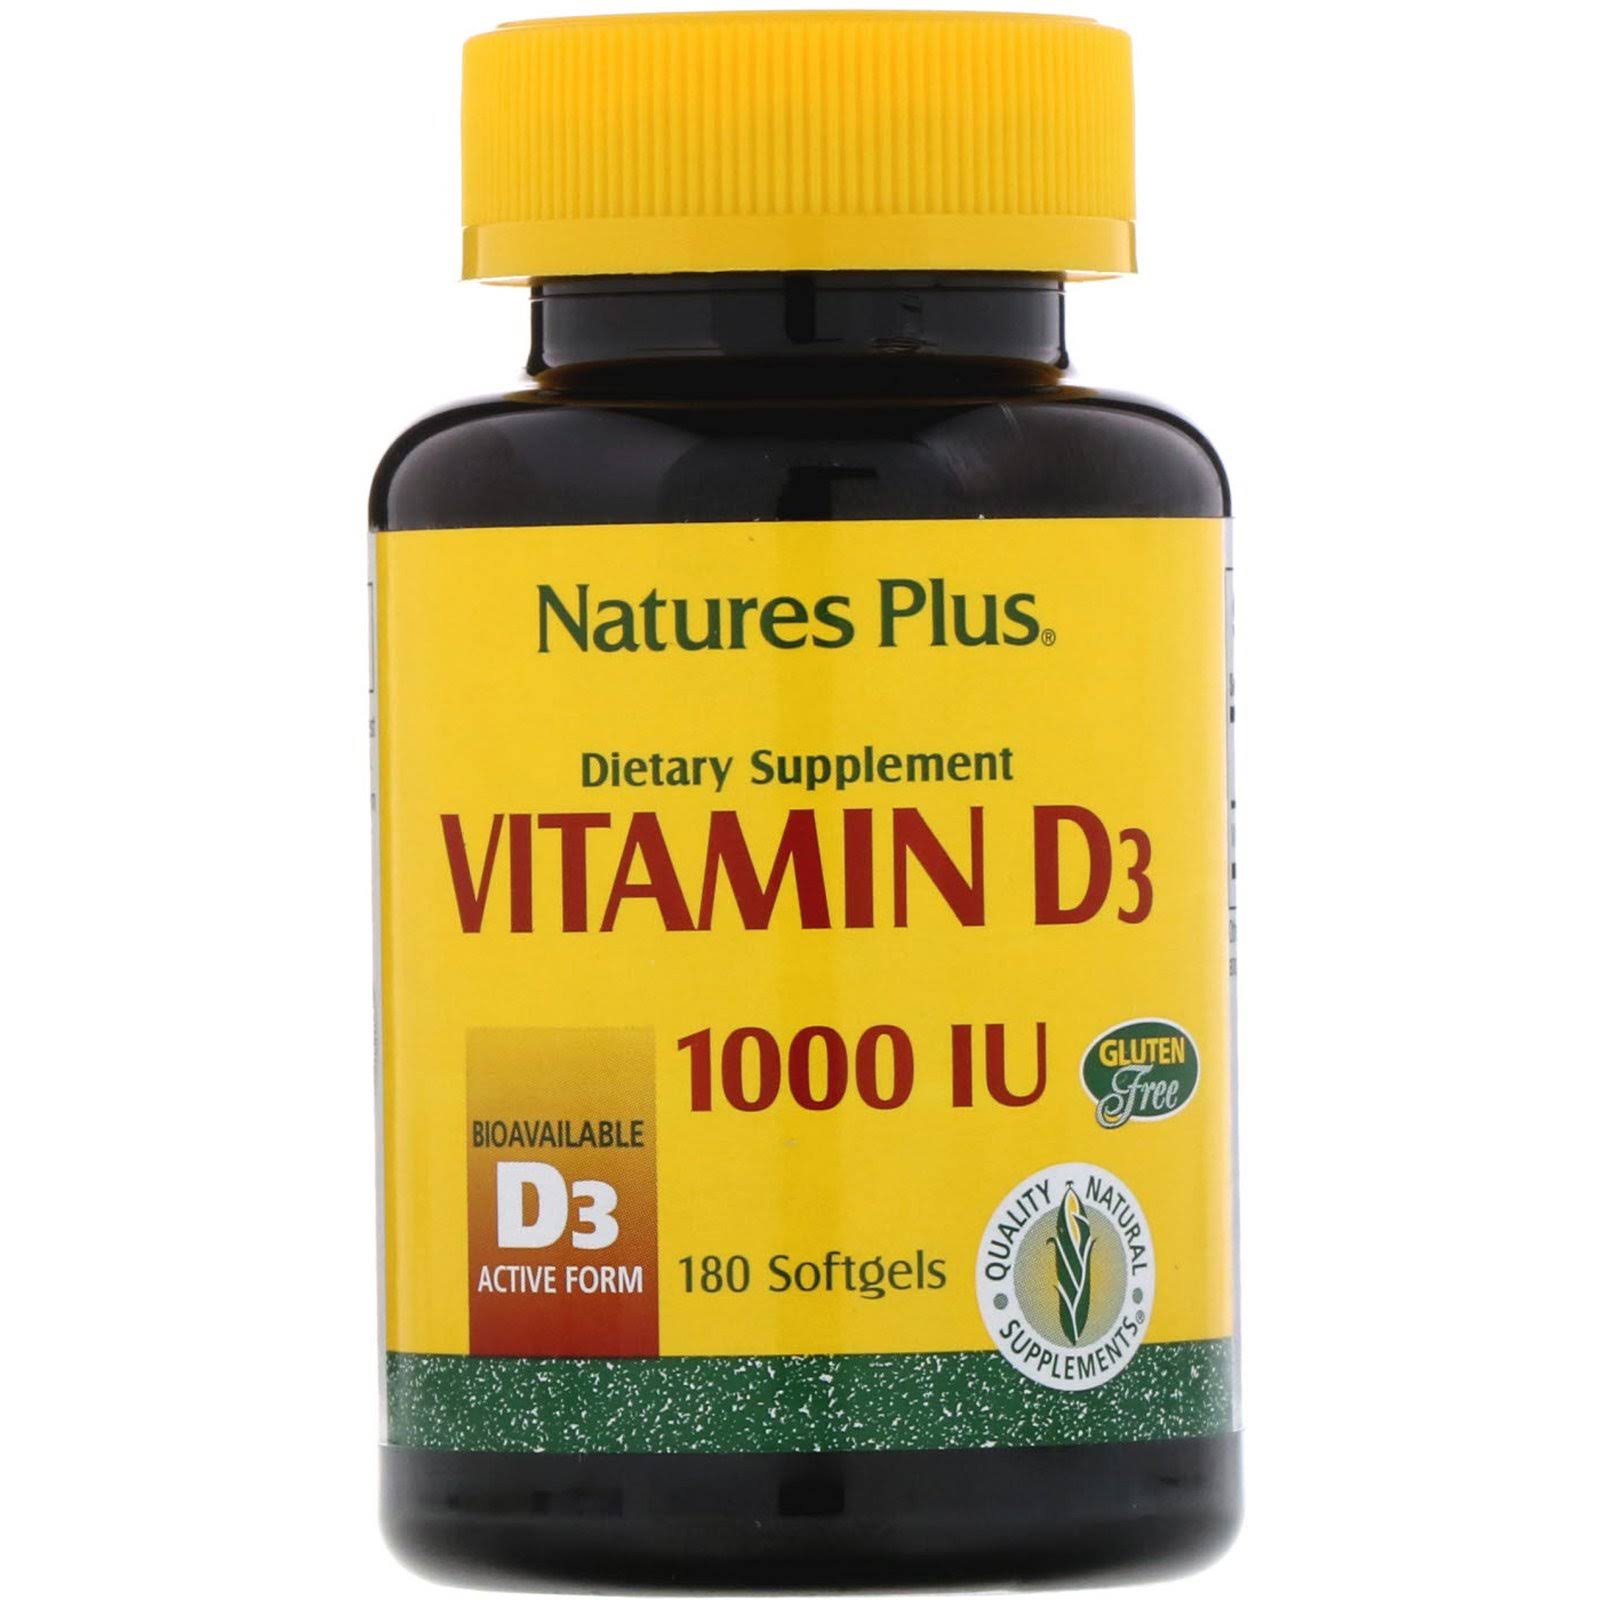 Natures Plus Vitamin D 1000 IU Dietary Supplement - 180 Capsules